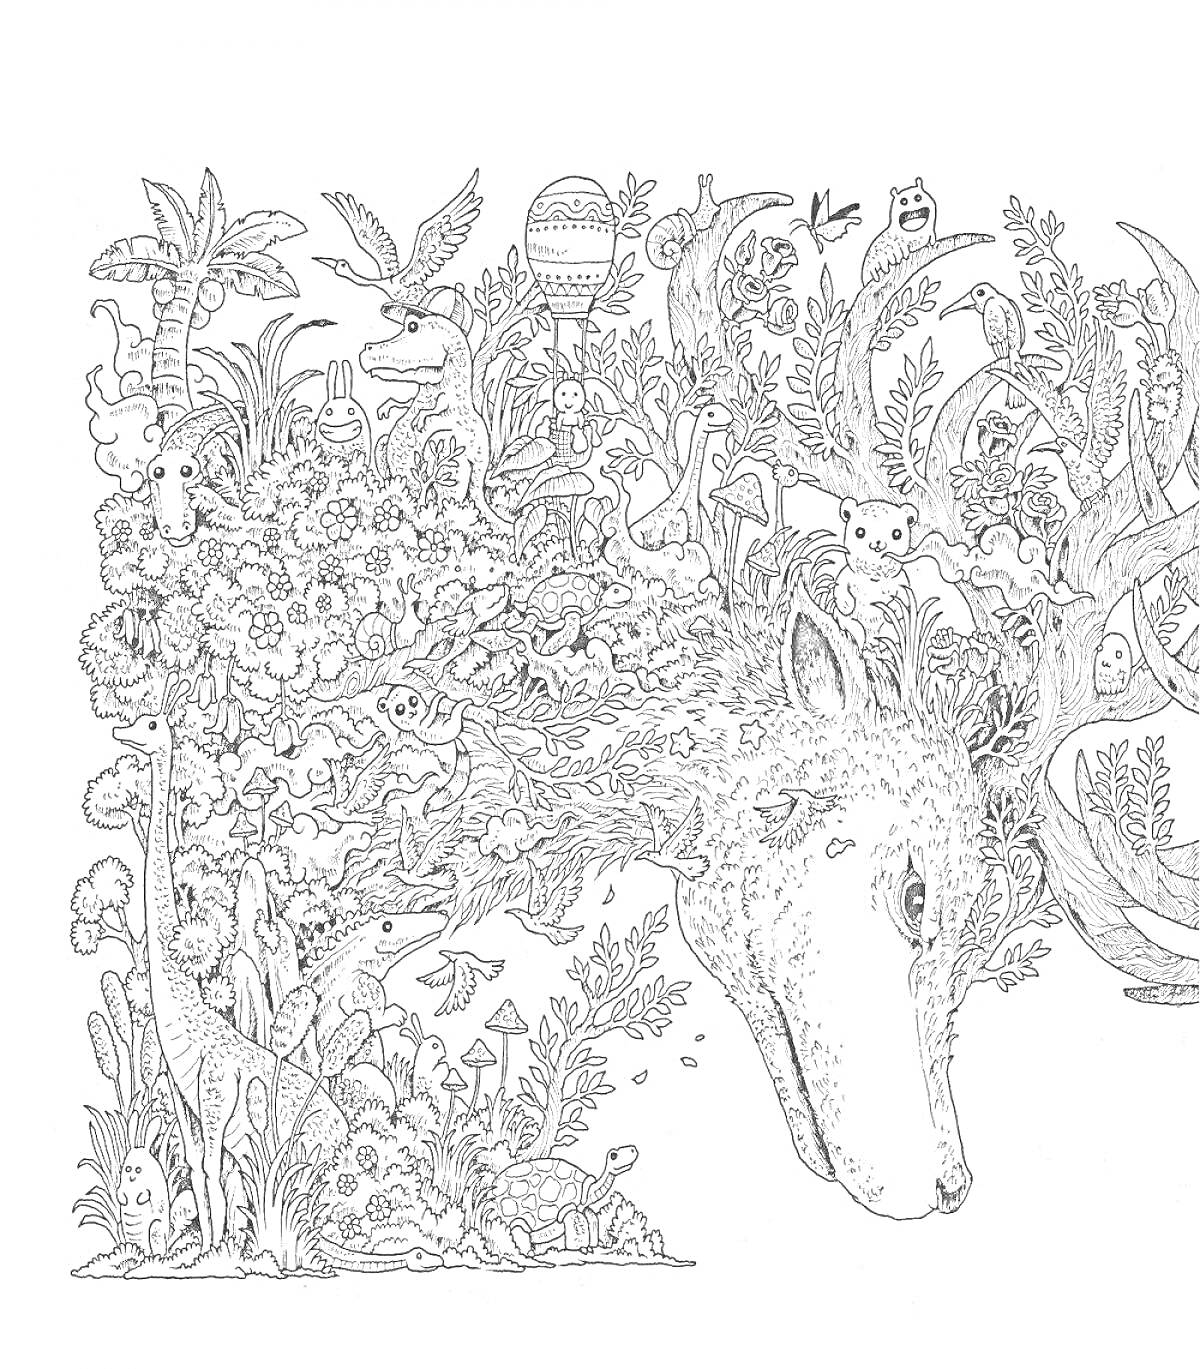 Лесная голова оленя с окружающим его природным миром, включая деревья, птиц, цветы, грибы, траву, бабочек и других лесных существ